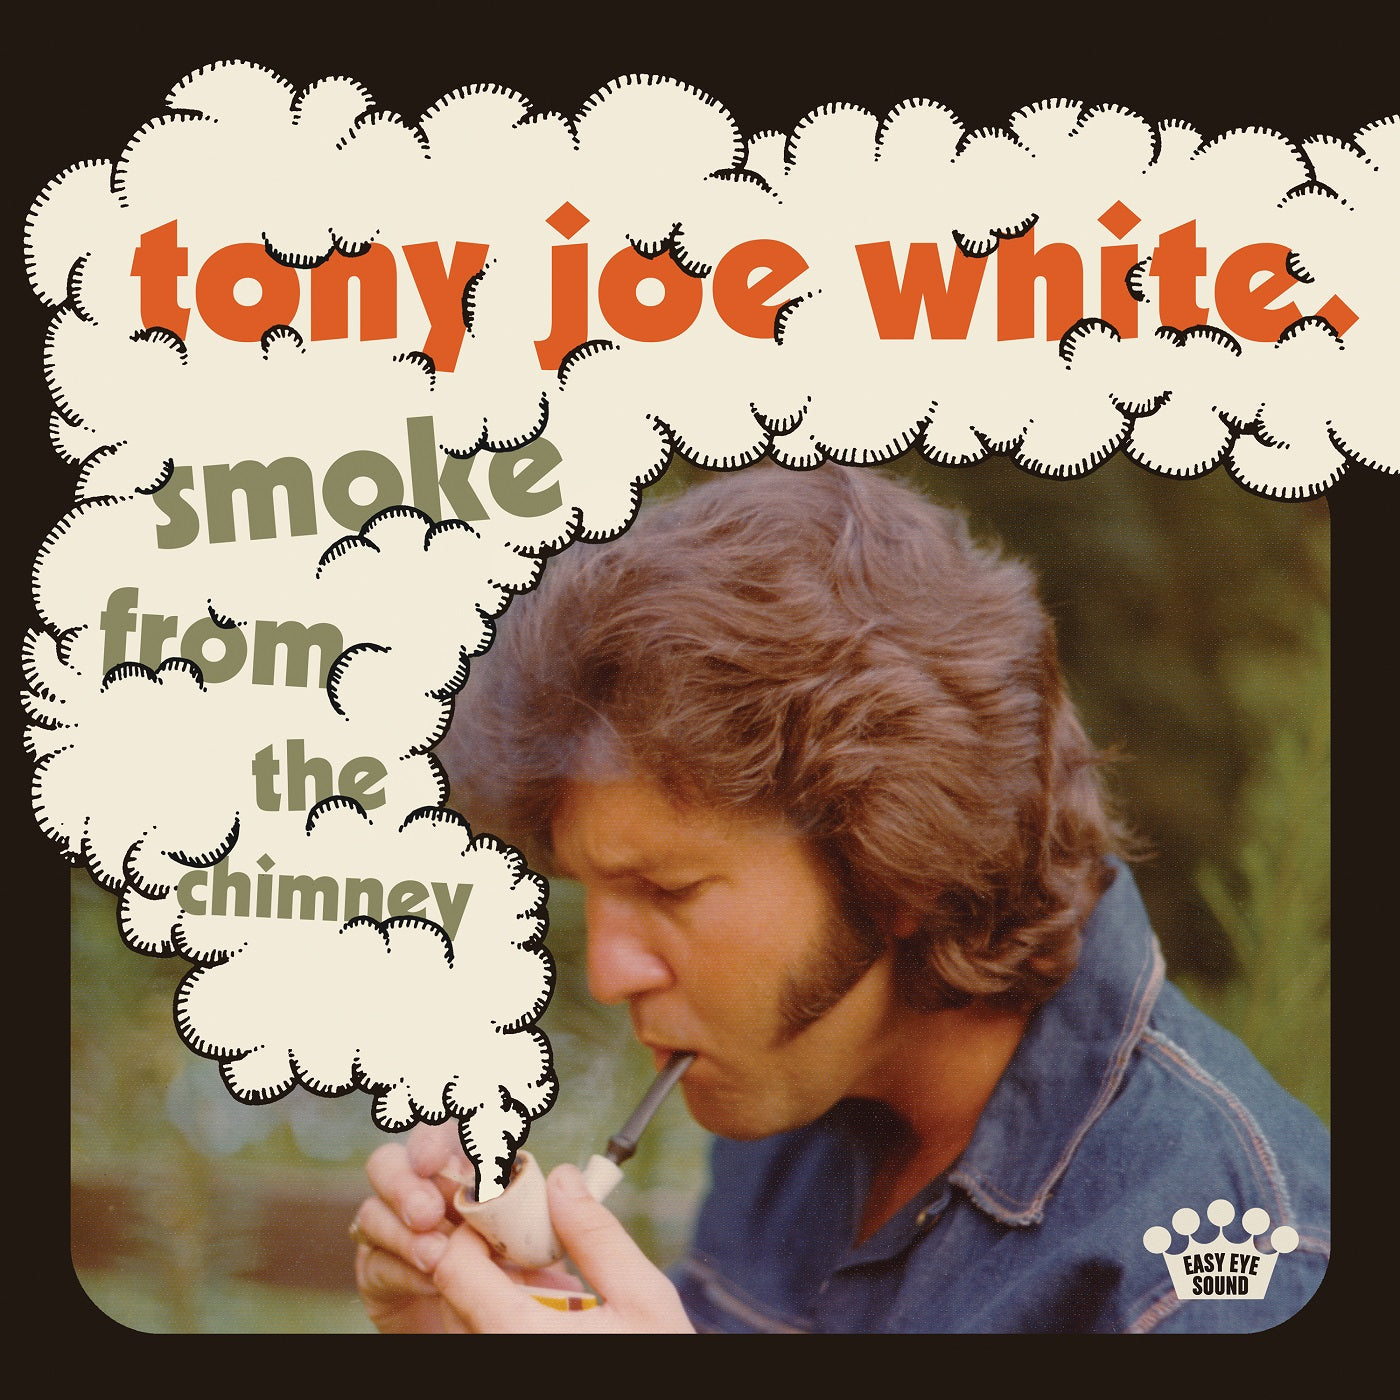 Tony Joe White - Smoke from the Chimney [Standard Black Vinyl]